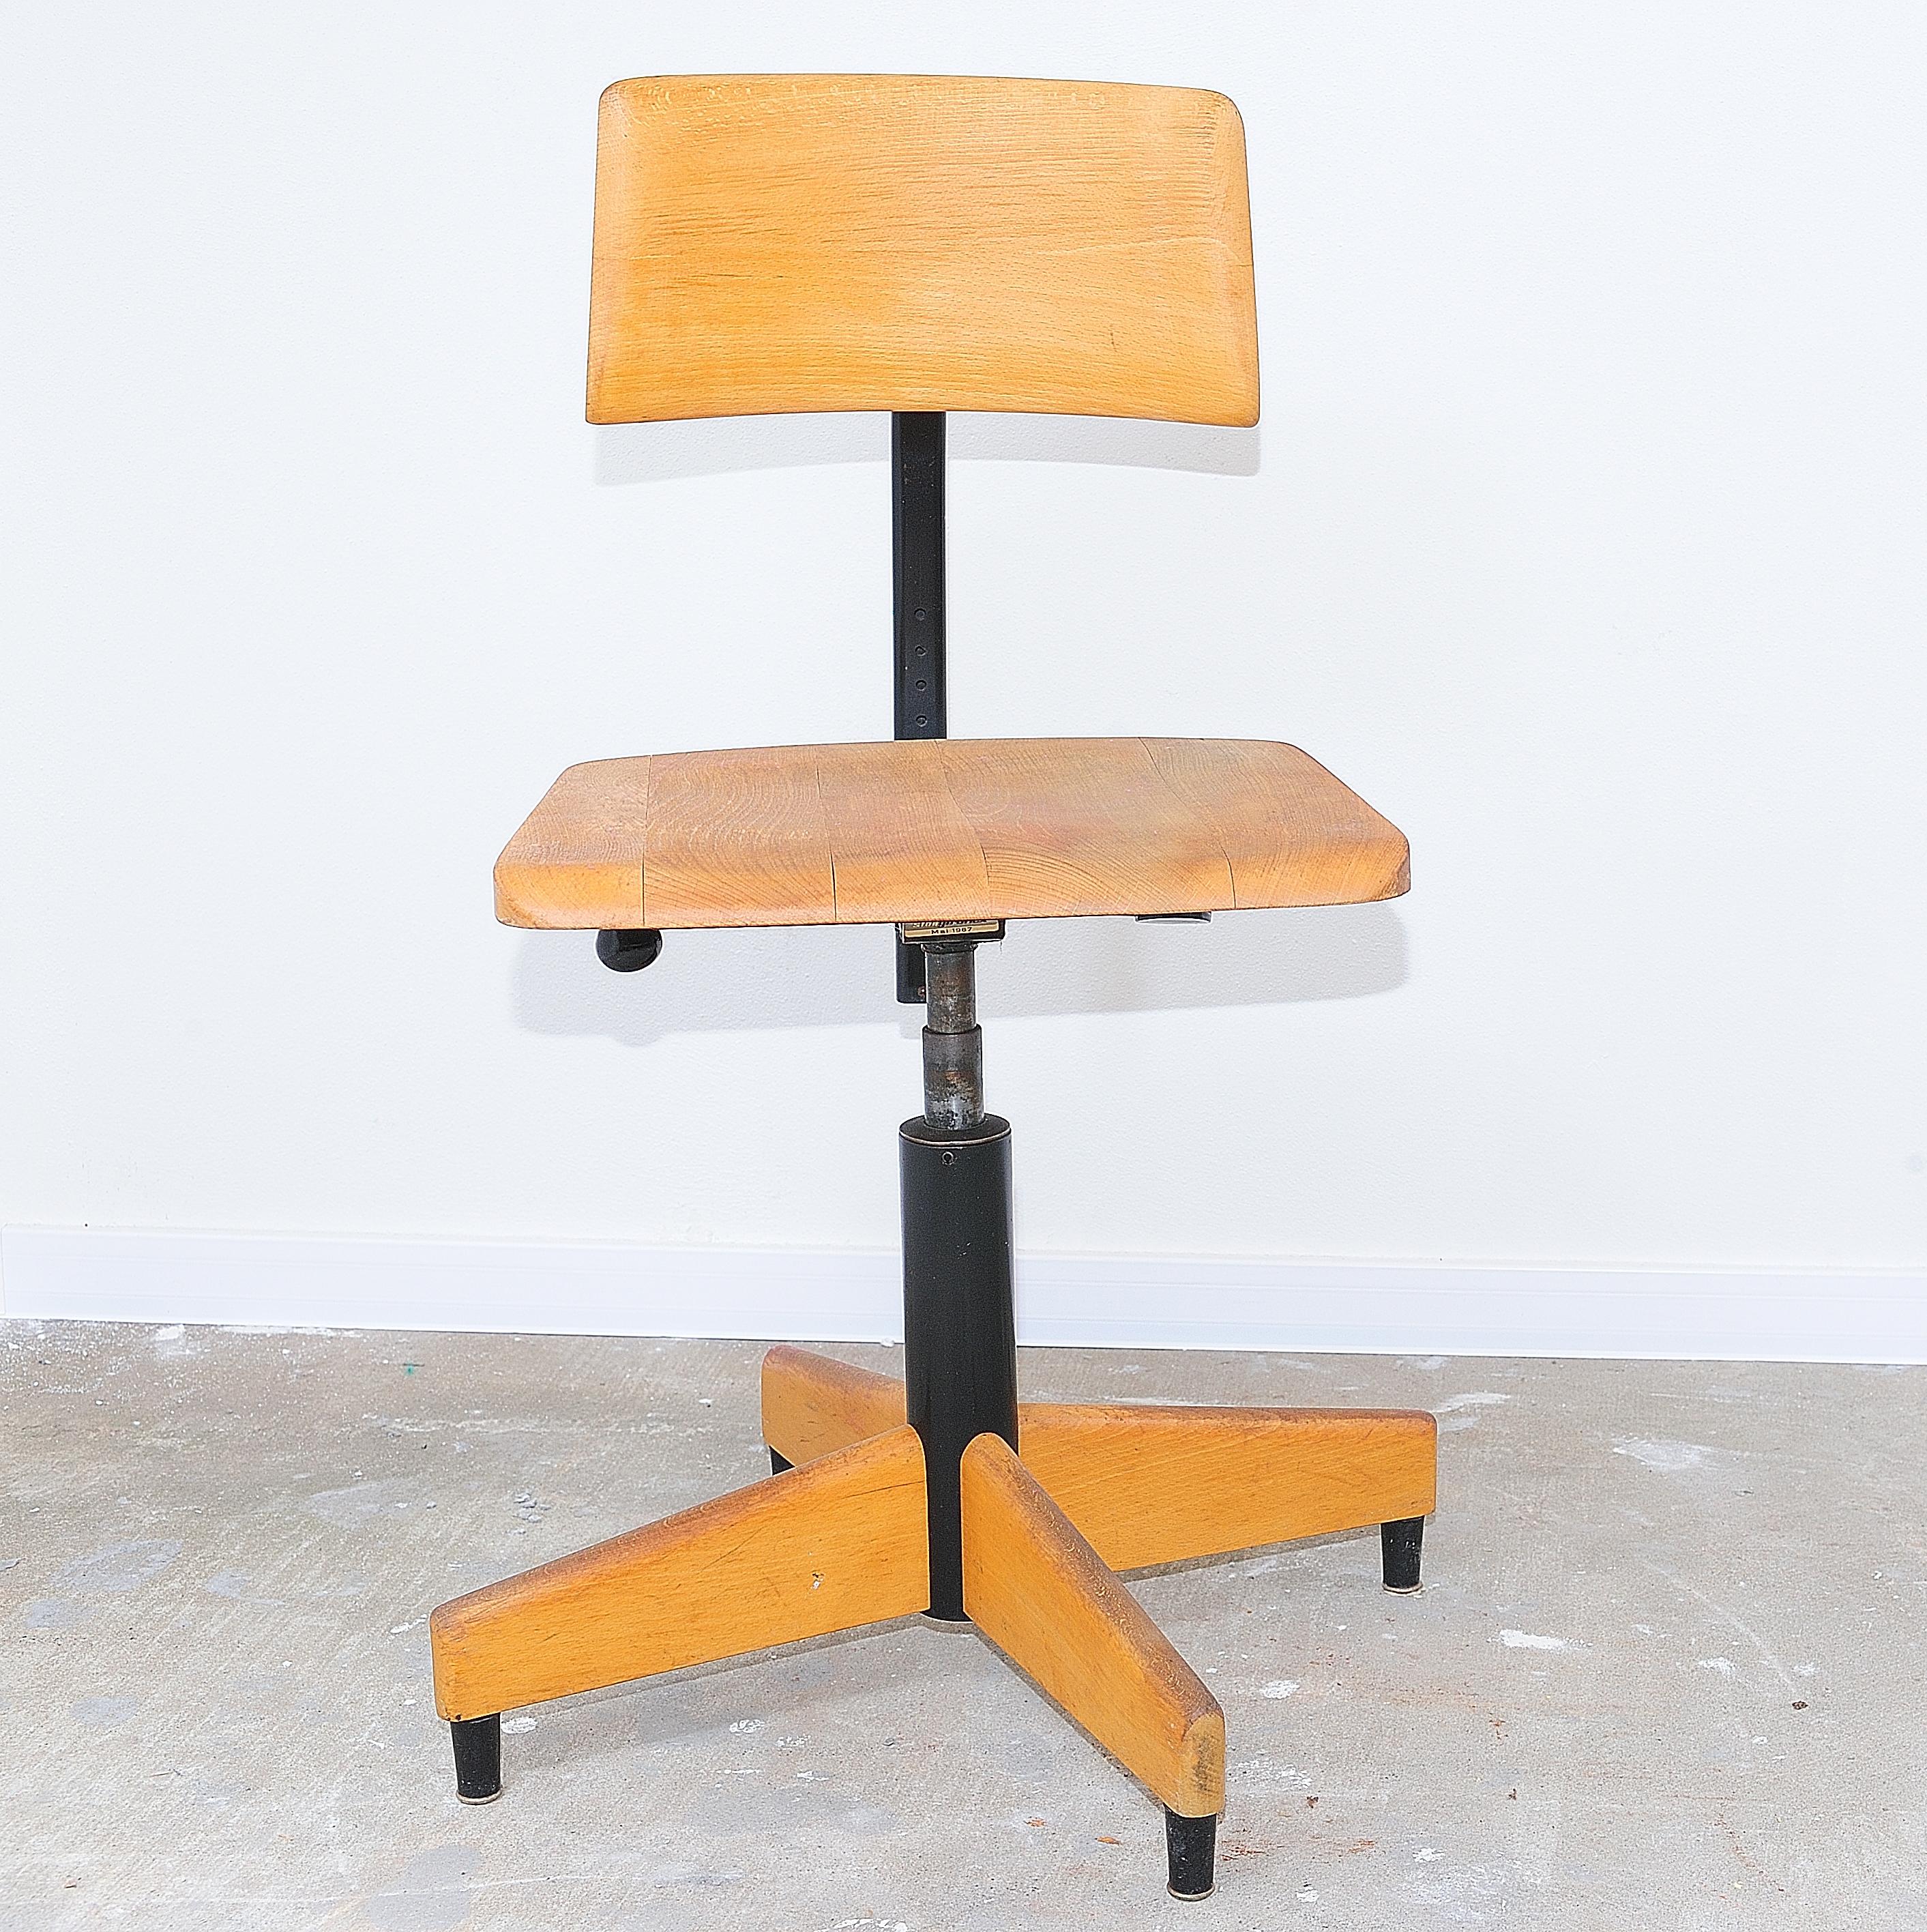 Dieser Vintage-Schreibtischstuhl wurde von der Firma Kovona in den 1970er Jahren hergestellt. Voll funktionsfähig, einstellbar, drehbar. Es ist aus Eisen und Buchenholz gefertigt. In gutem Vintage-Zustand, mit leichten Alters- und Gebrauchsspuren.